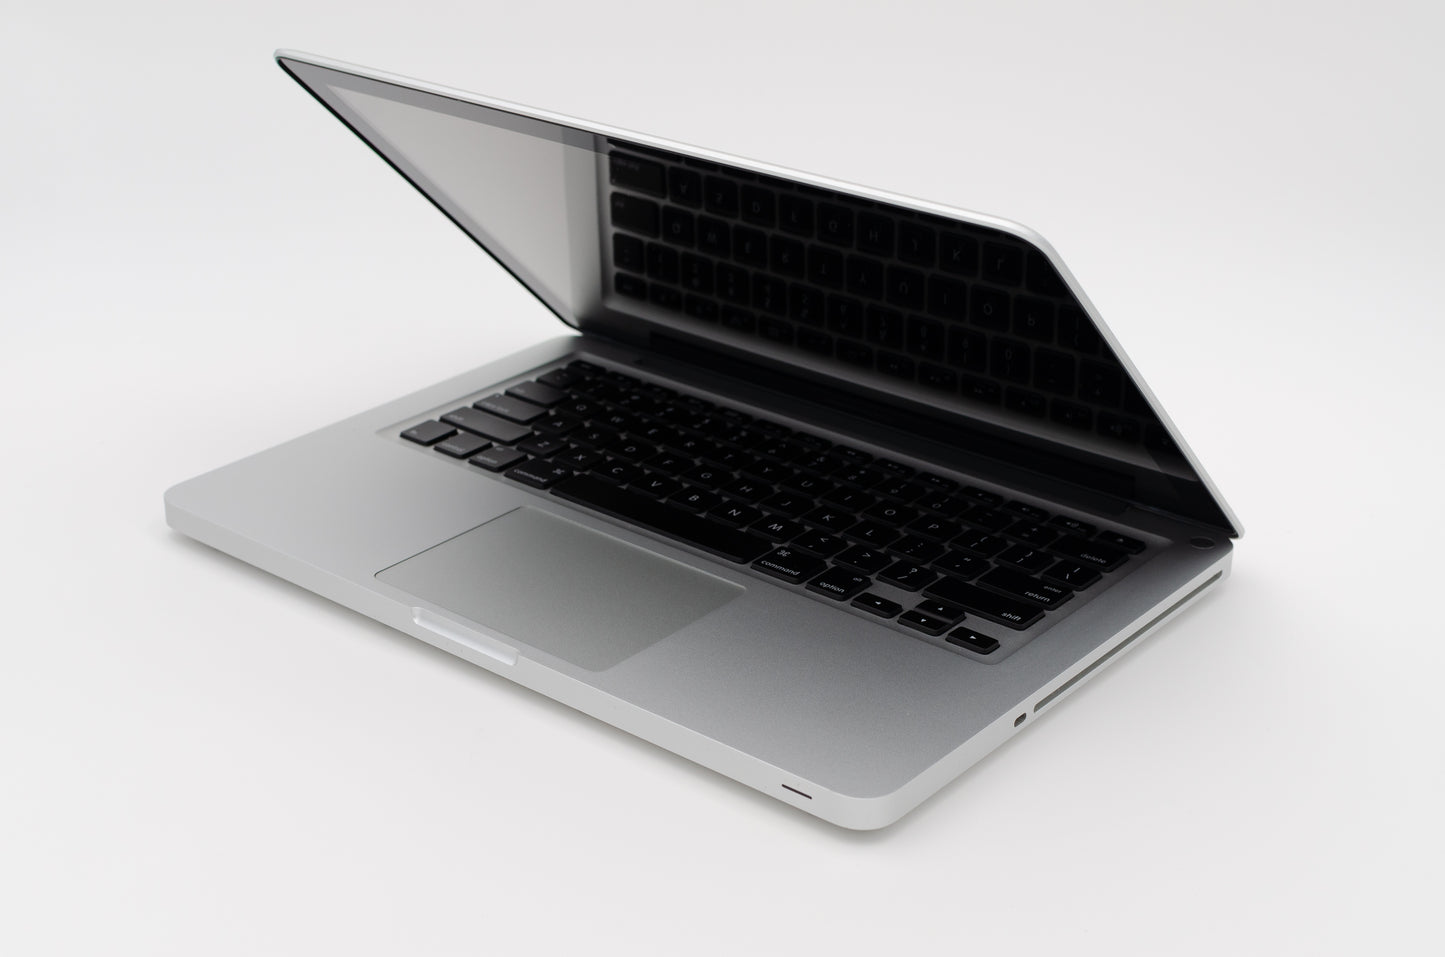 apple-mid-2009-13.3-inch-macbook-pro-a1278-aluminum-c2d - 2.53ghz processor, 4gb ram, 940m - 256mb gpu-mb991ll/a-5